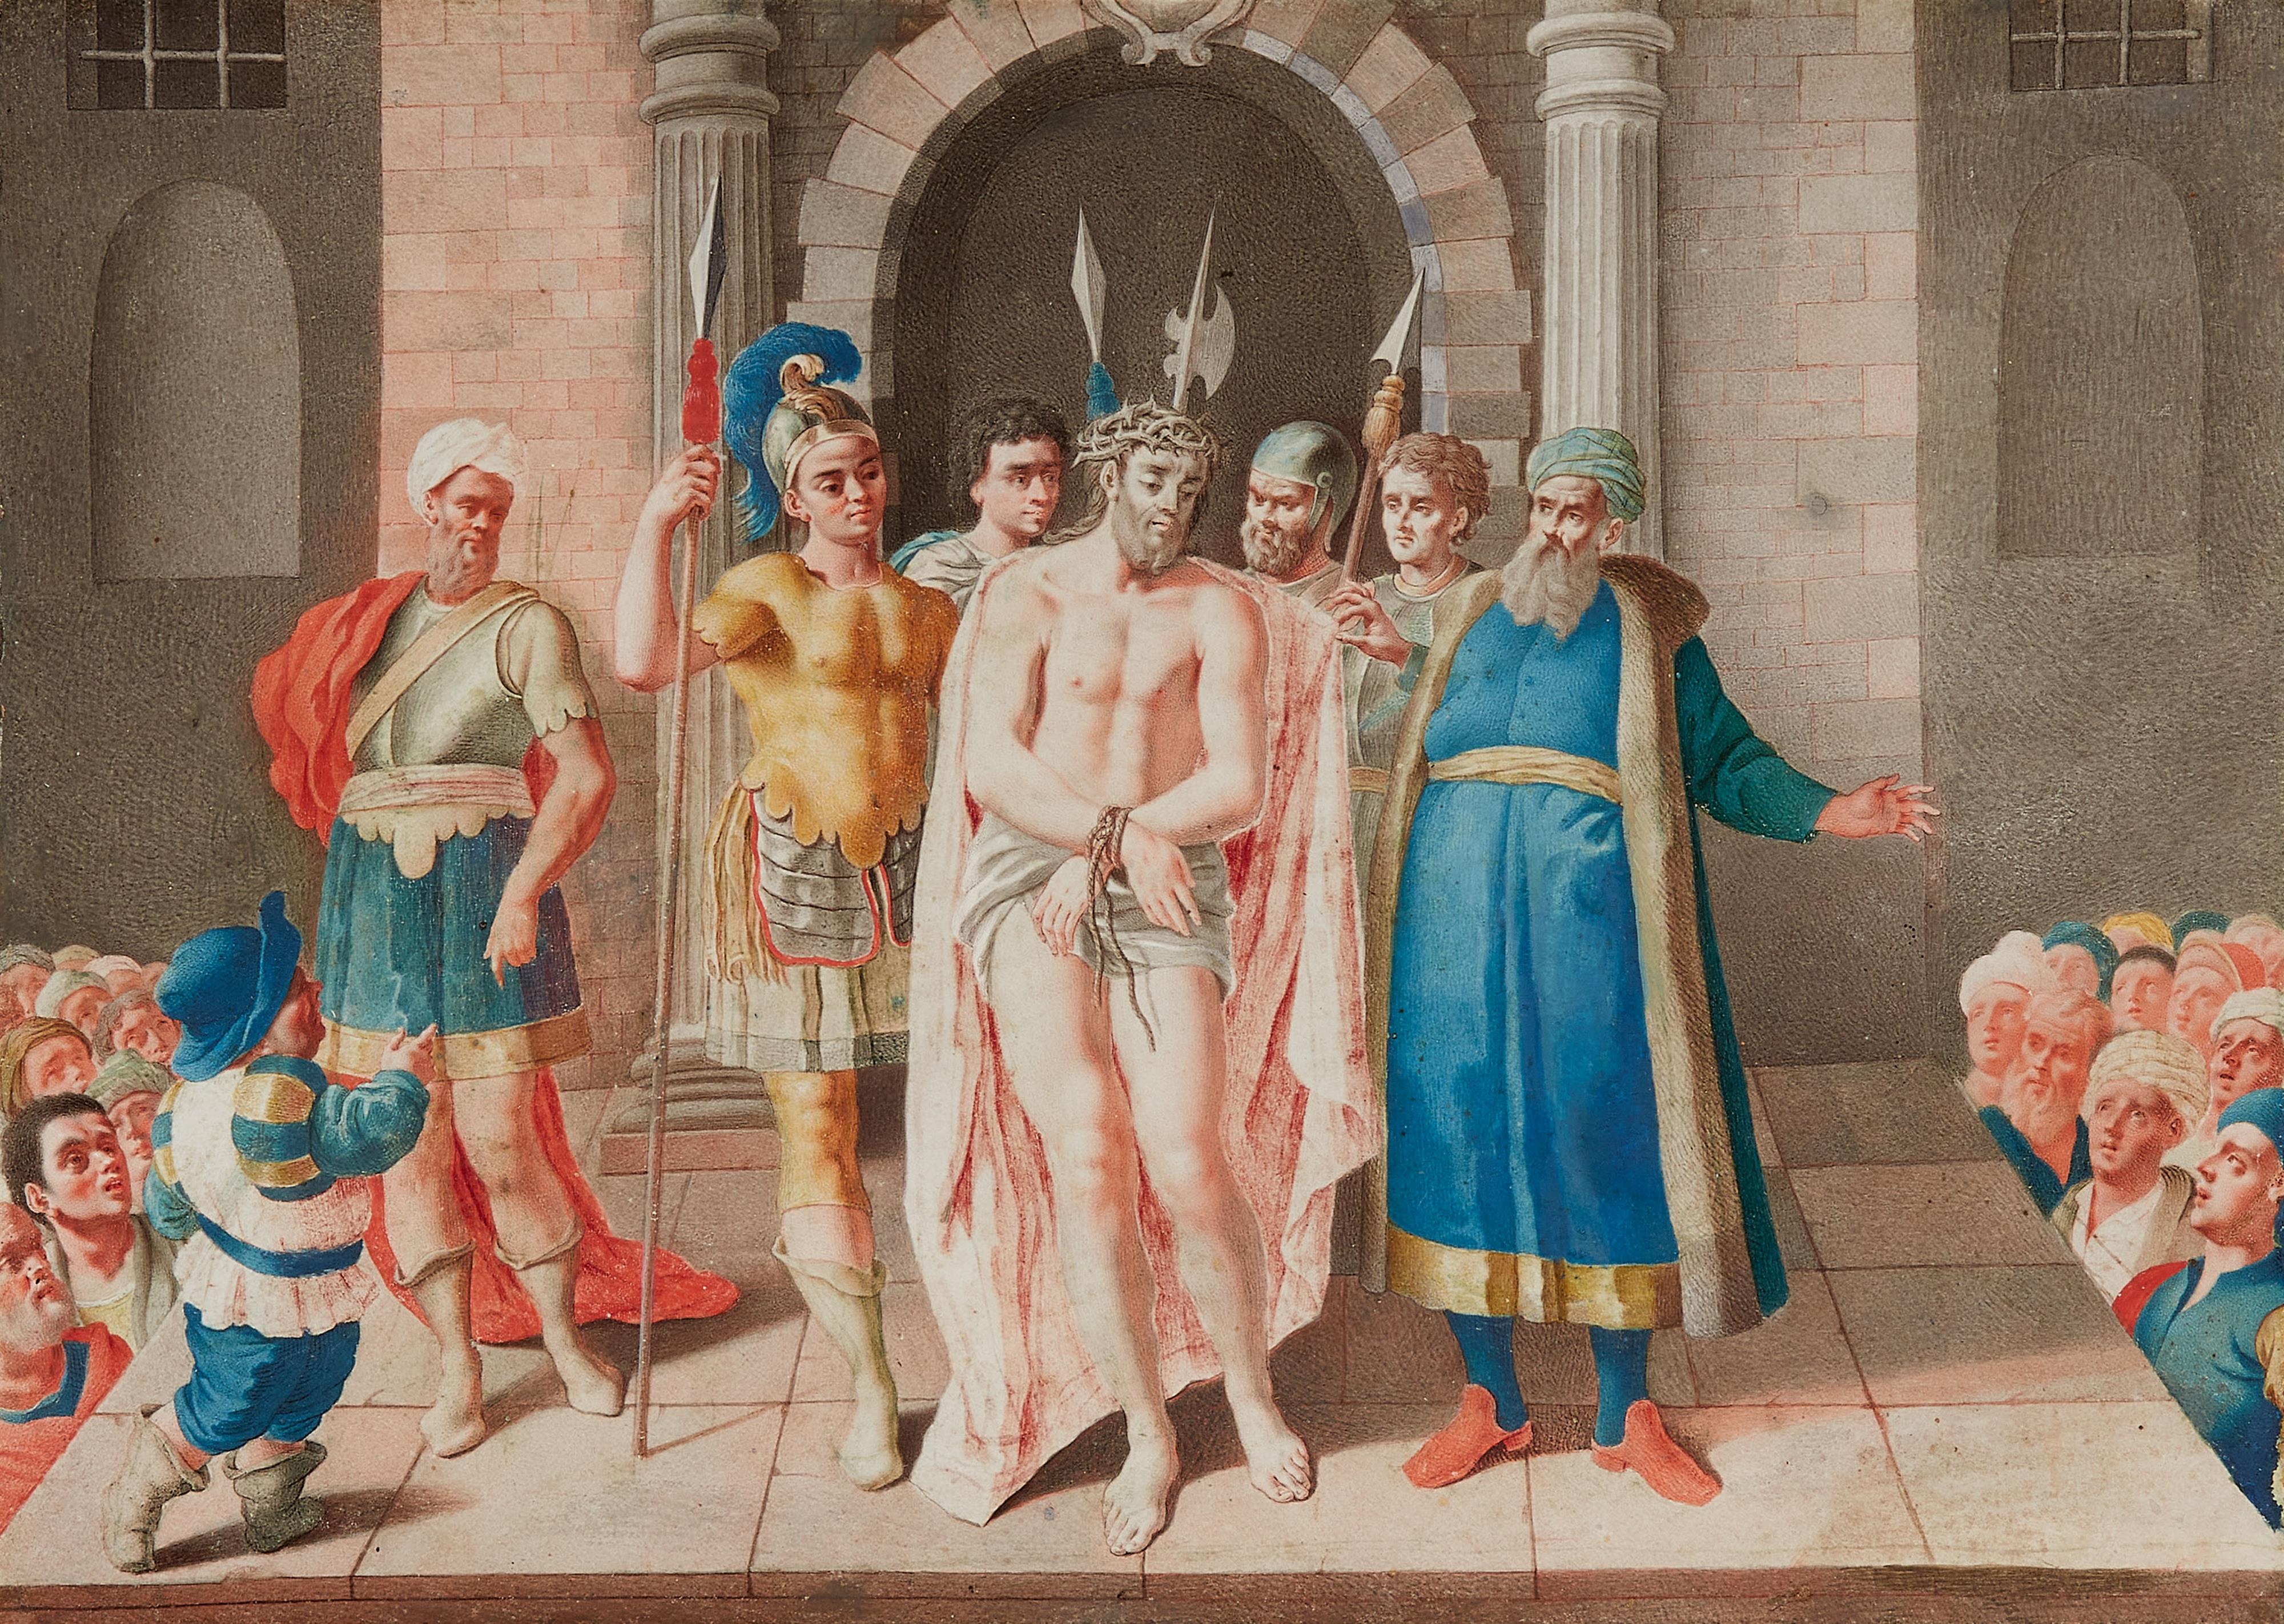 Johann König, zugeschrieben - Ecce Homo
Pilatus wäscht seine Hände in Unschuld - image-1